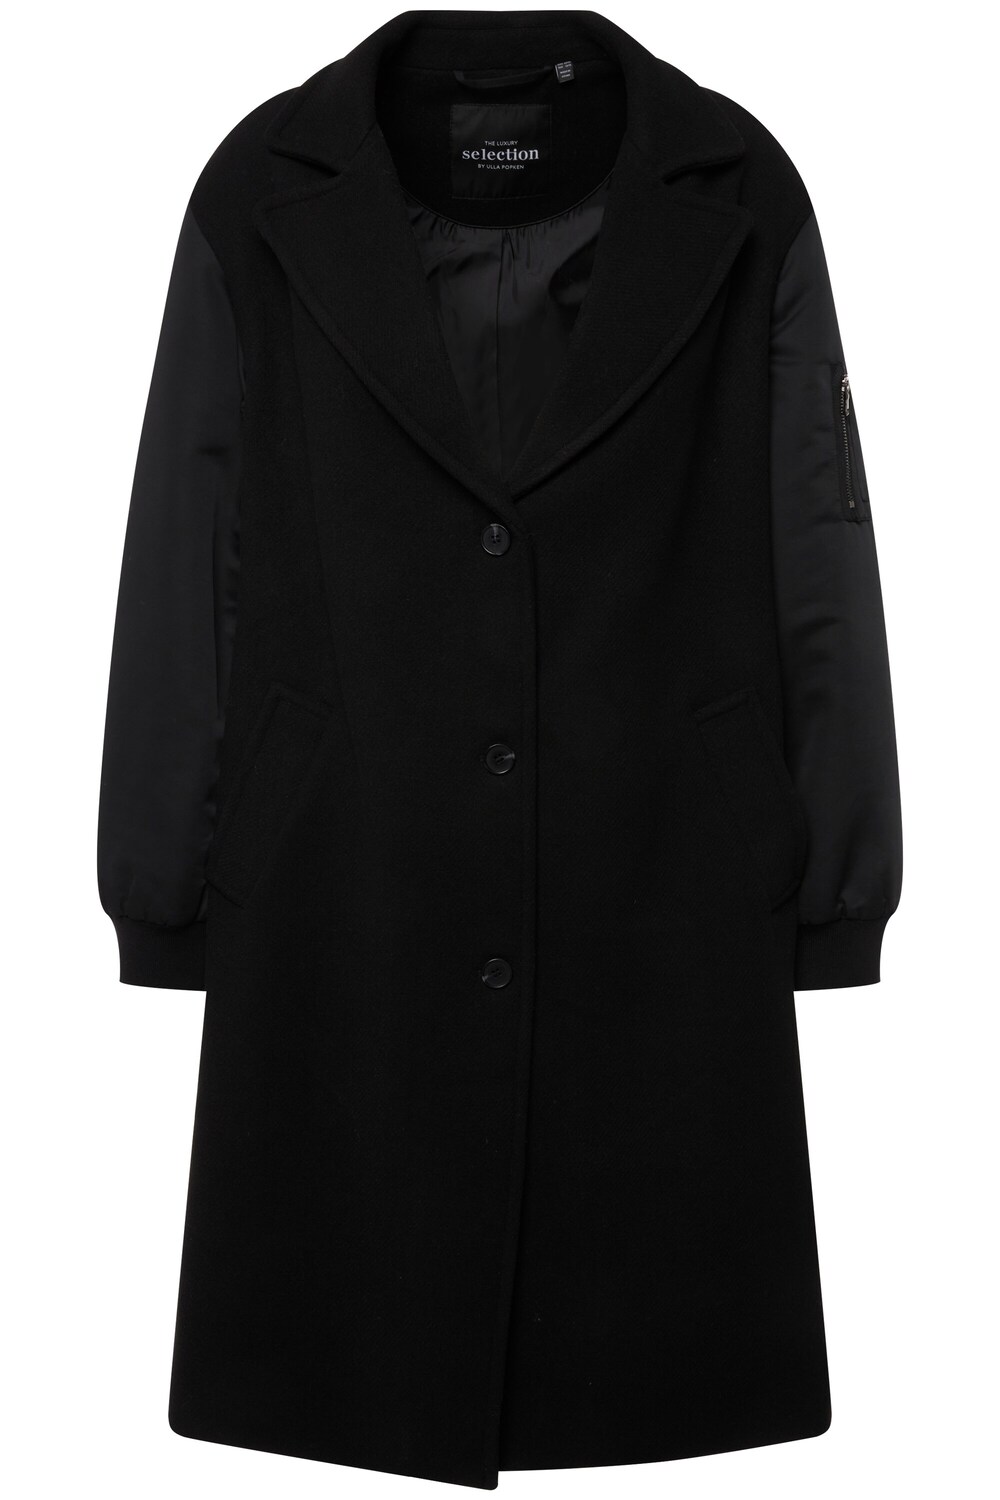 Межсезонное пальто Ulla Popken, черный межсезонное пальто ulla popken пестрый коричневый